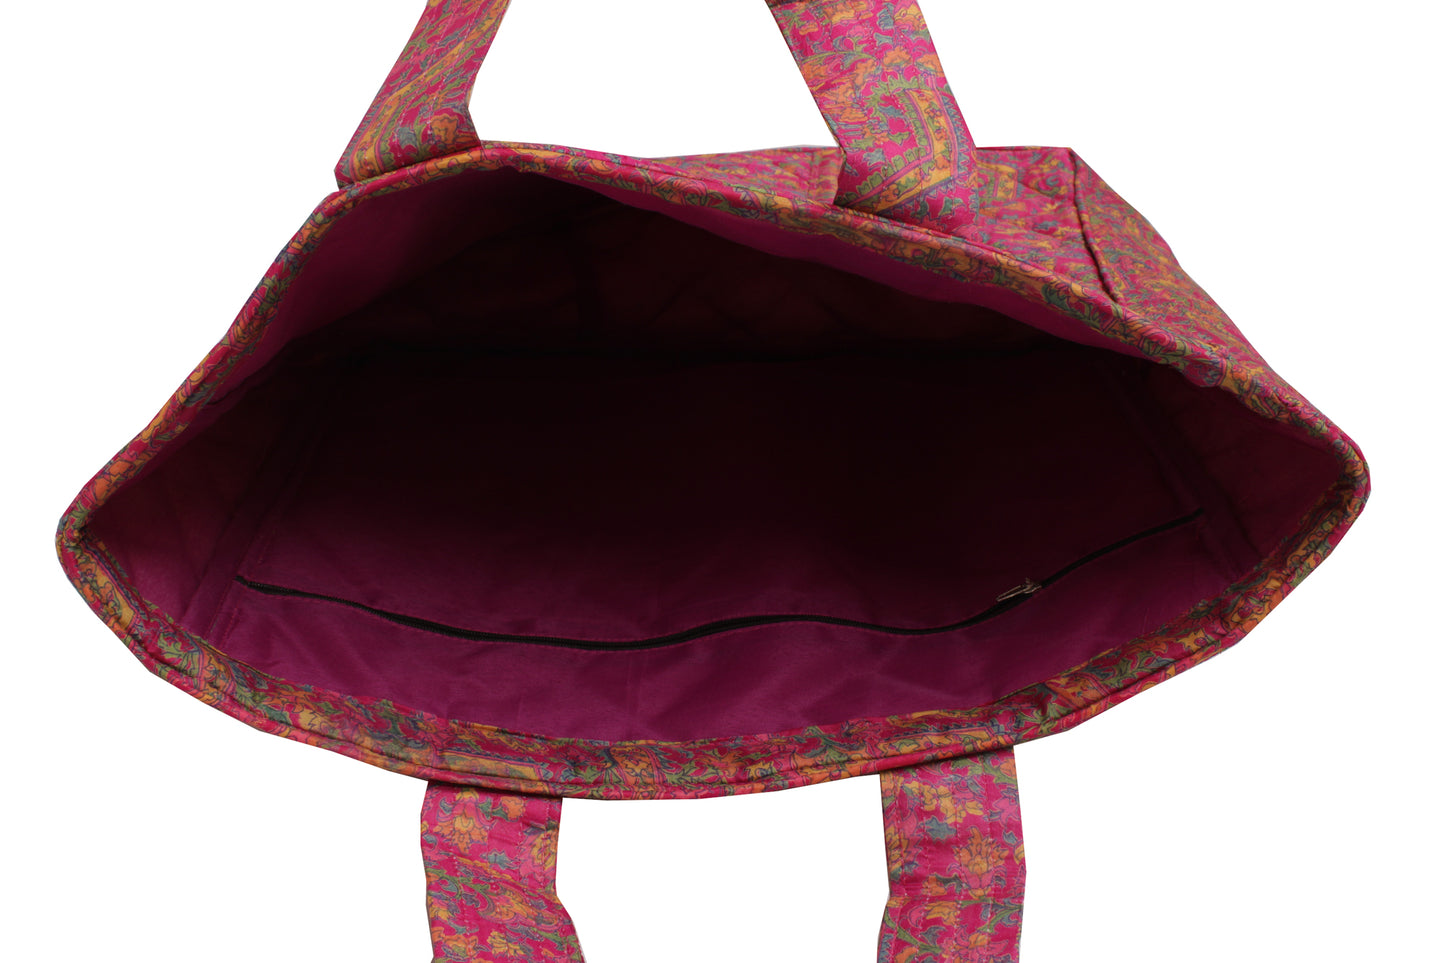 Sushila Vintage Magenta Tote Bag 100% Pure Silk Printed Handbag Shoulder Bag